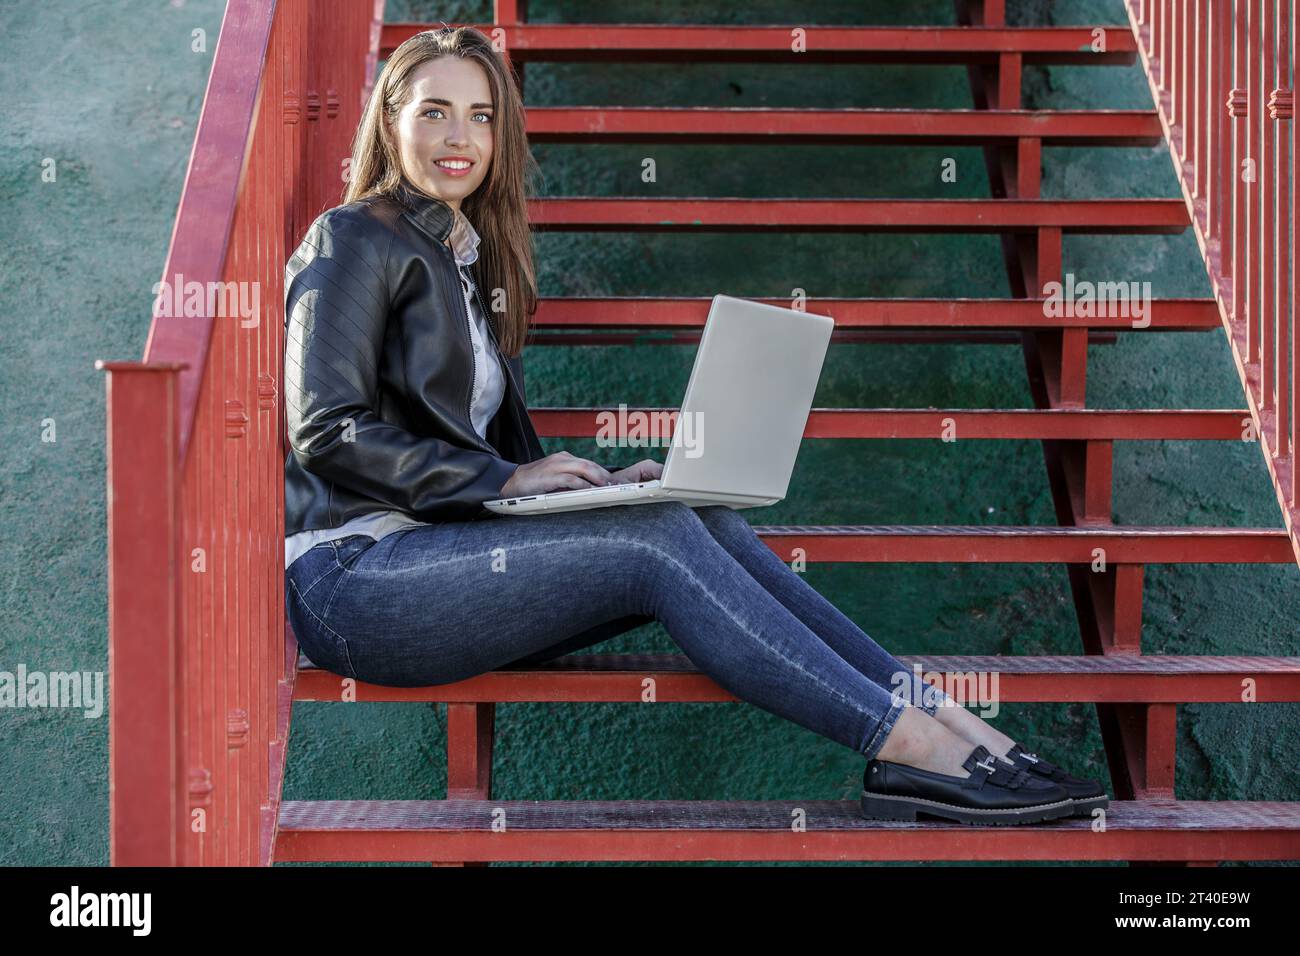 Corps entier de jeune femme heureuse travailleur à distance assis sur l'escalier rouge et travaillant à distance via netbook par jour ensoleillé Banque D'Images